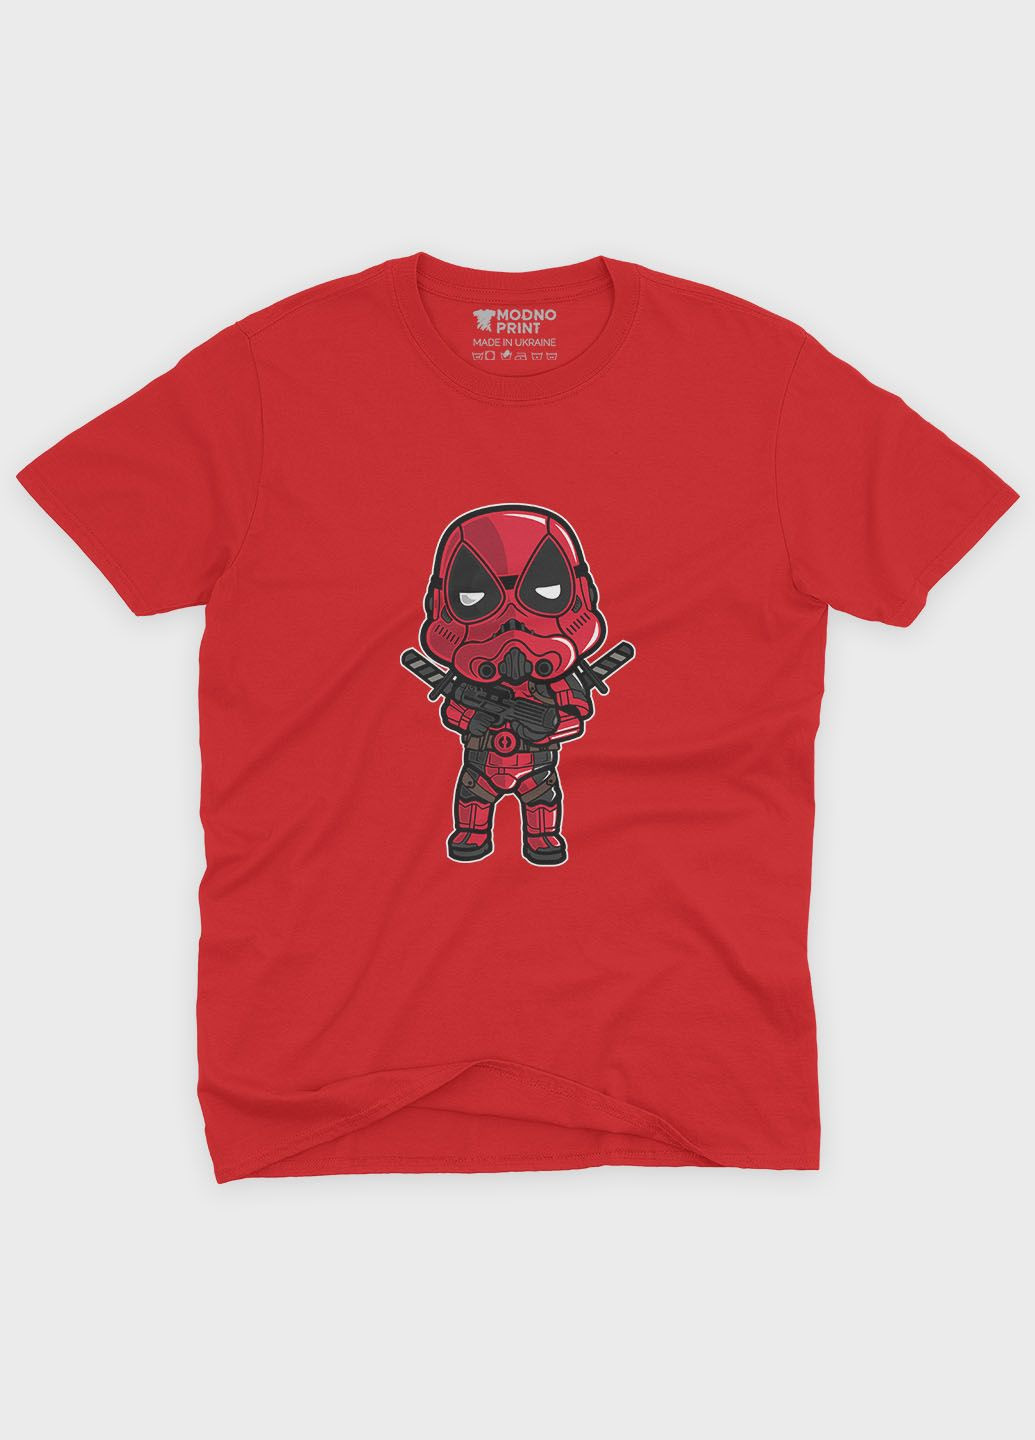 Червона демісезонна футболка для хлопчика з принтом антигероя - дедпул (ts001-1-sre-006-015-017-b) Modno